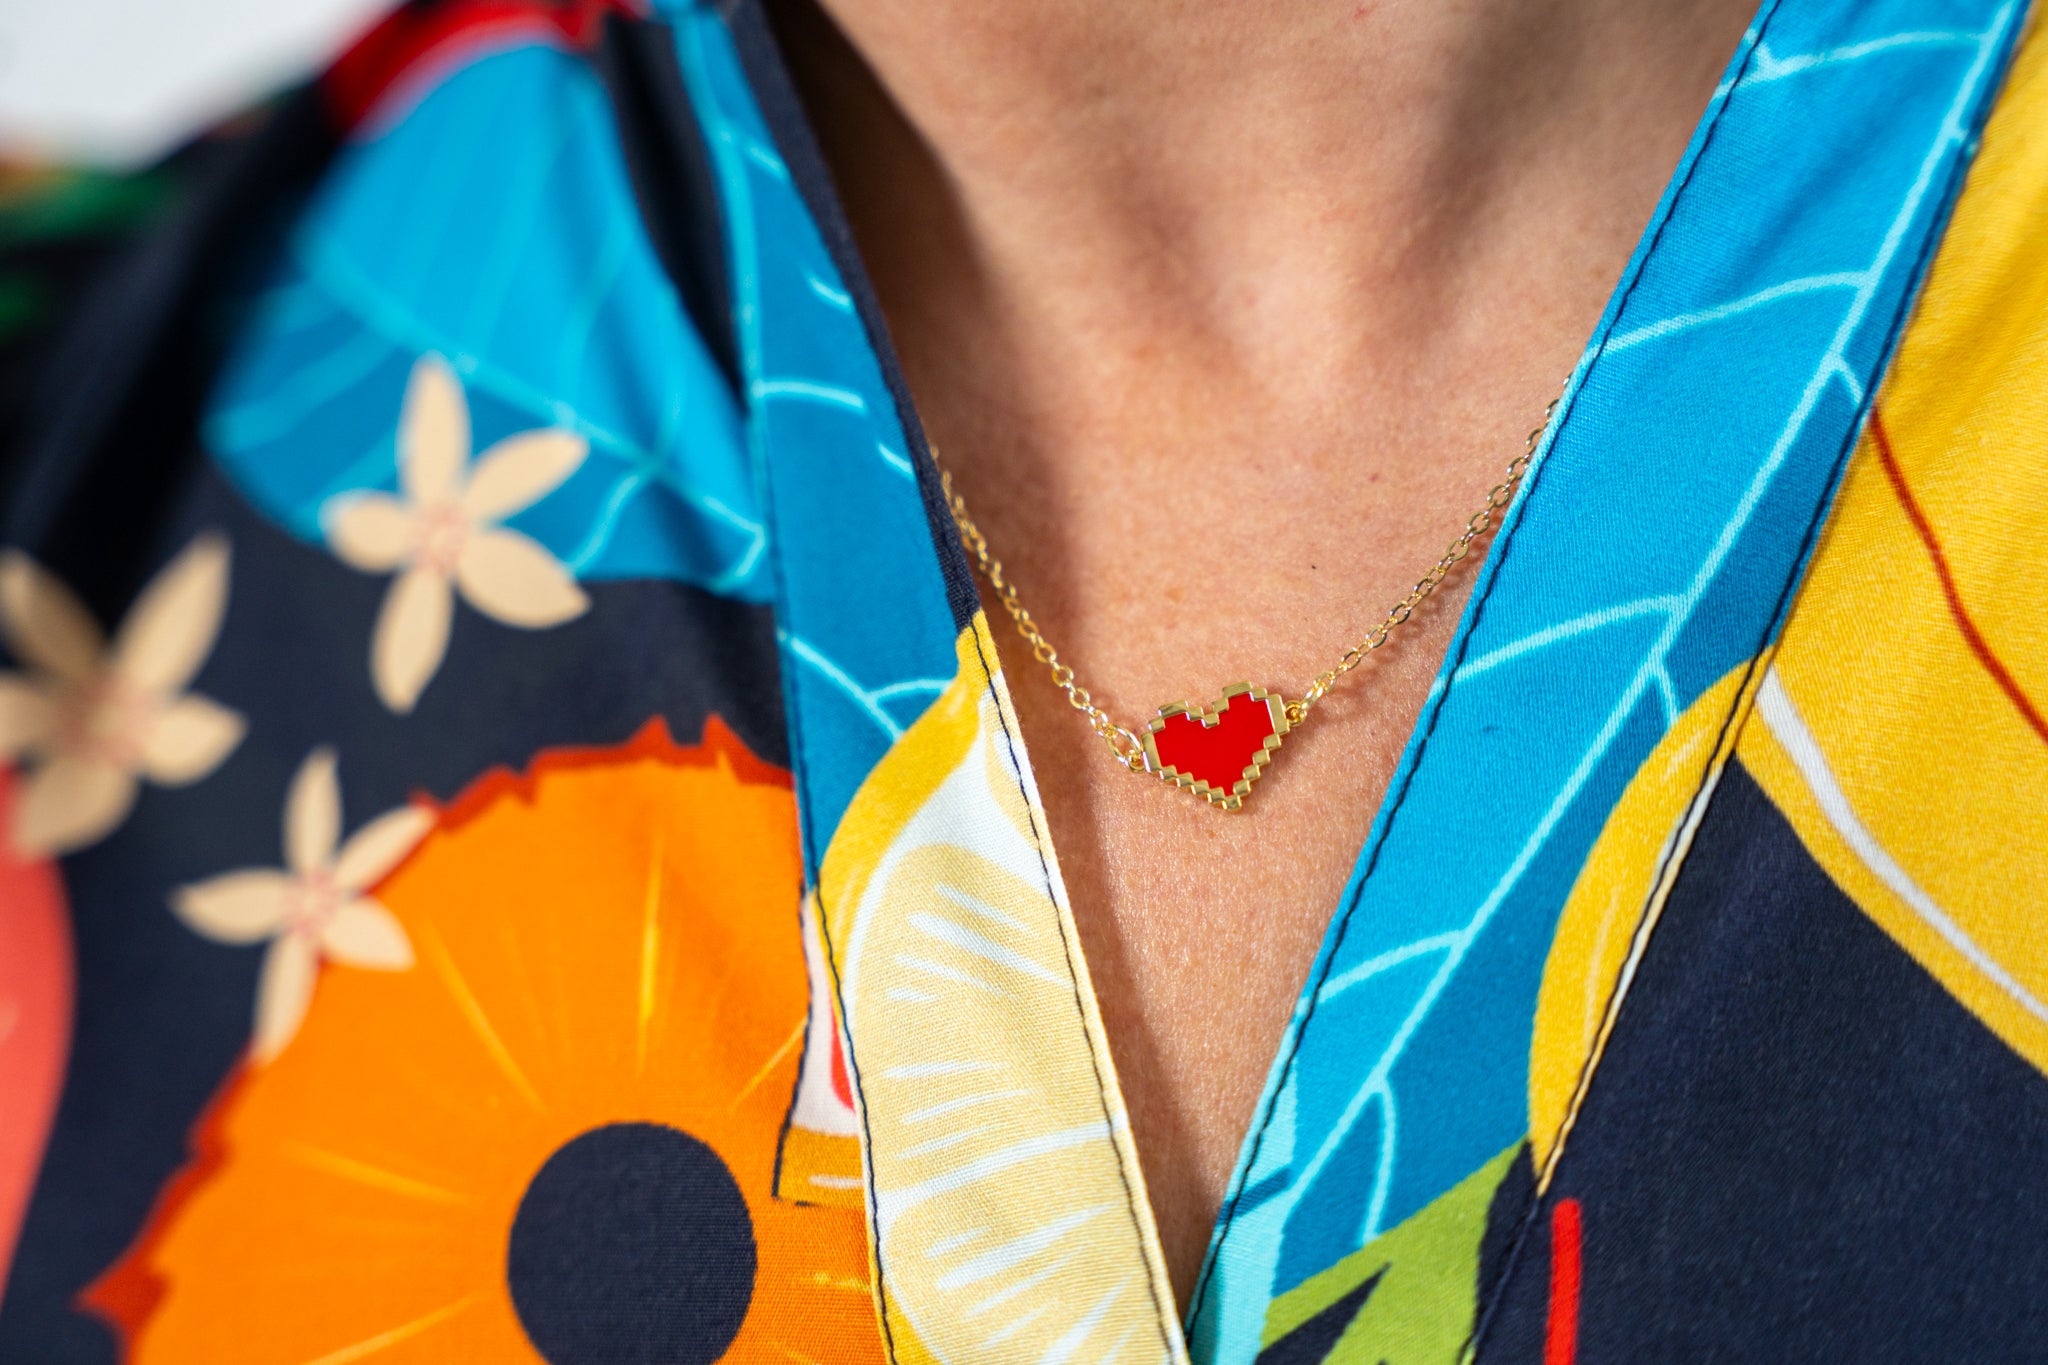 The Mario Heart Necklace